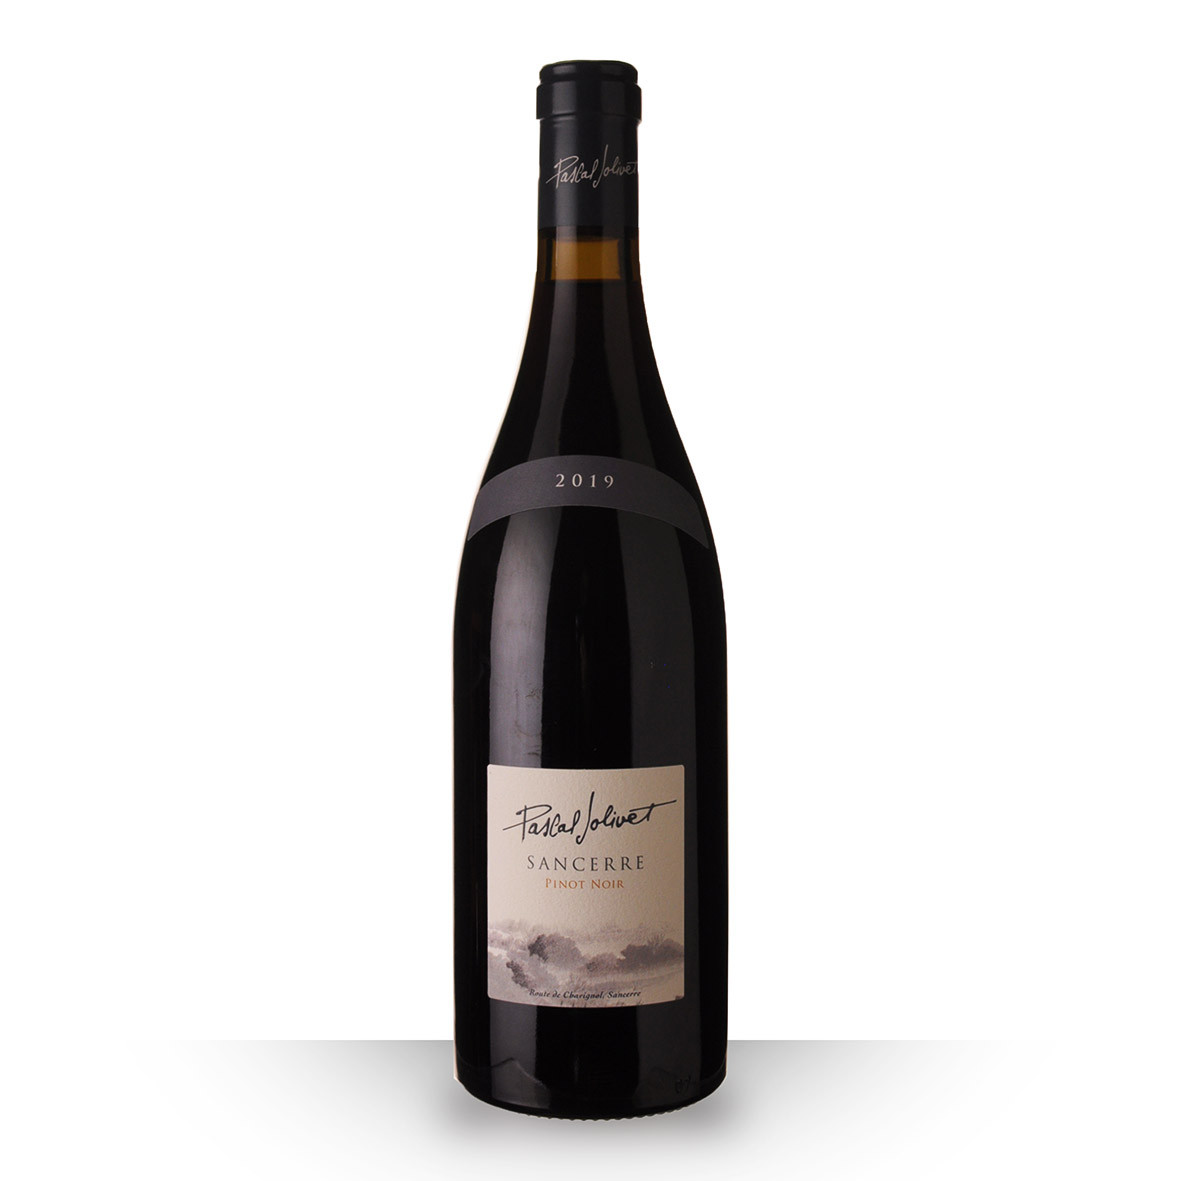 Pascal Jolivet Signature Sancerre Pinot Noir Rouge 2019 75cl www.odyssee-vins.com